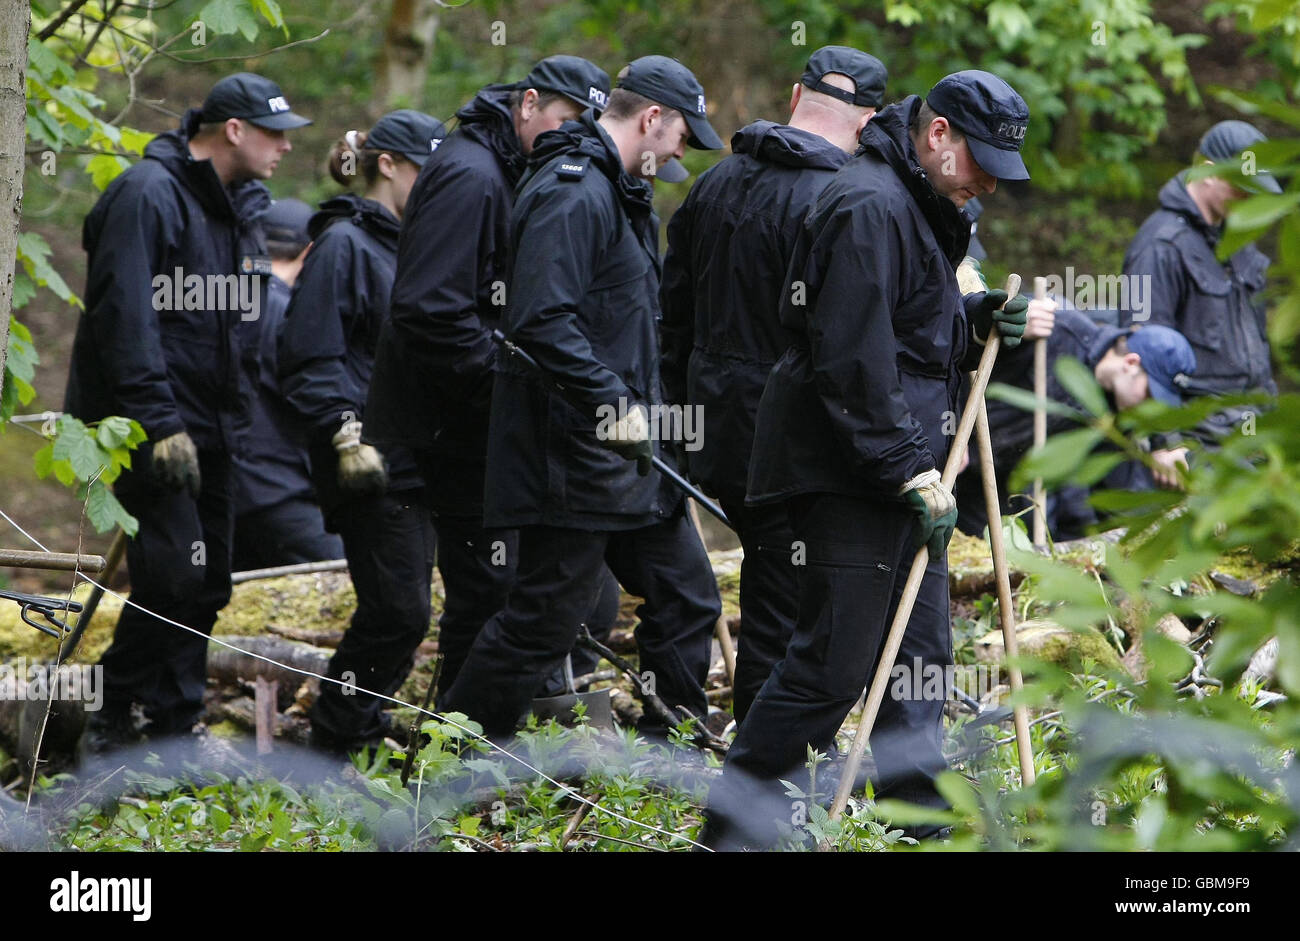 Offiziere der North West Counter Terrorism Unit durchsuchten im Rahmen der laufenden Operation nach Polizeirazzien Anfang des Monats ein Gebiet des öffentlichen Parks Heaton Park im Norden von Manchester. Stockfoto